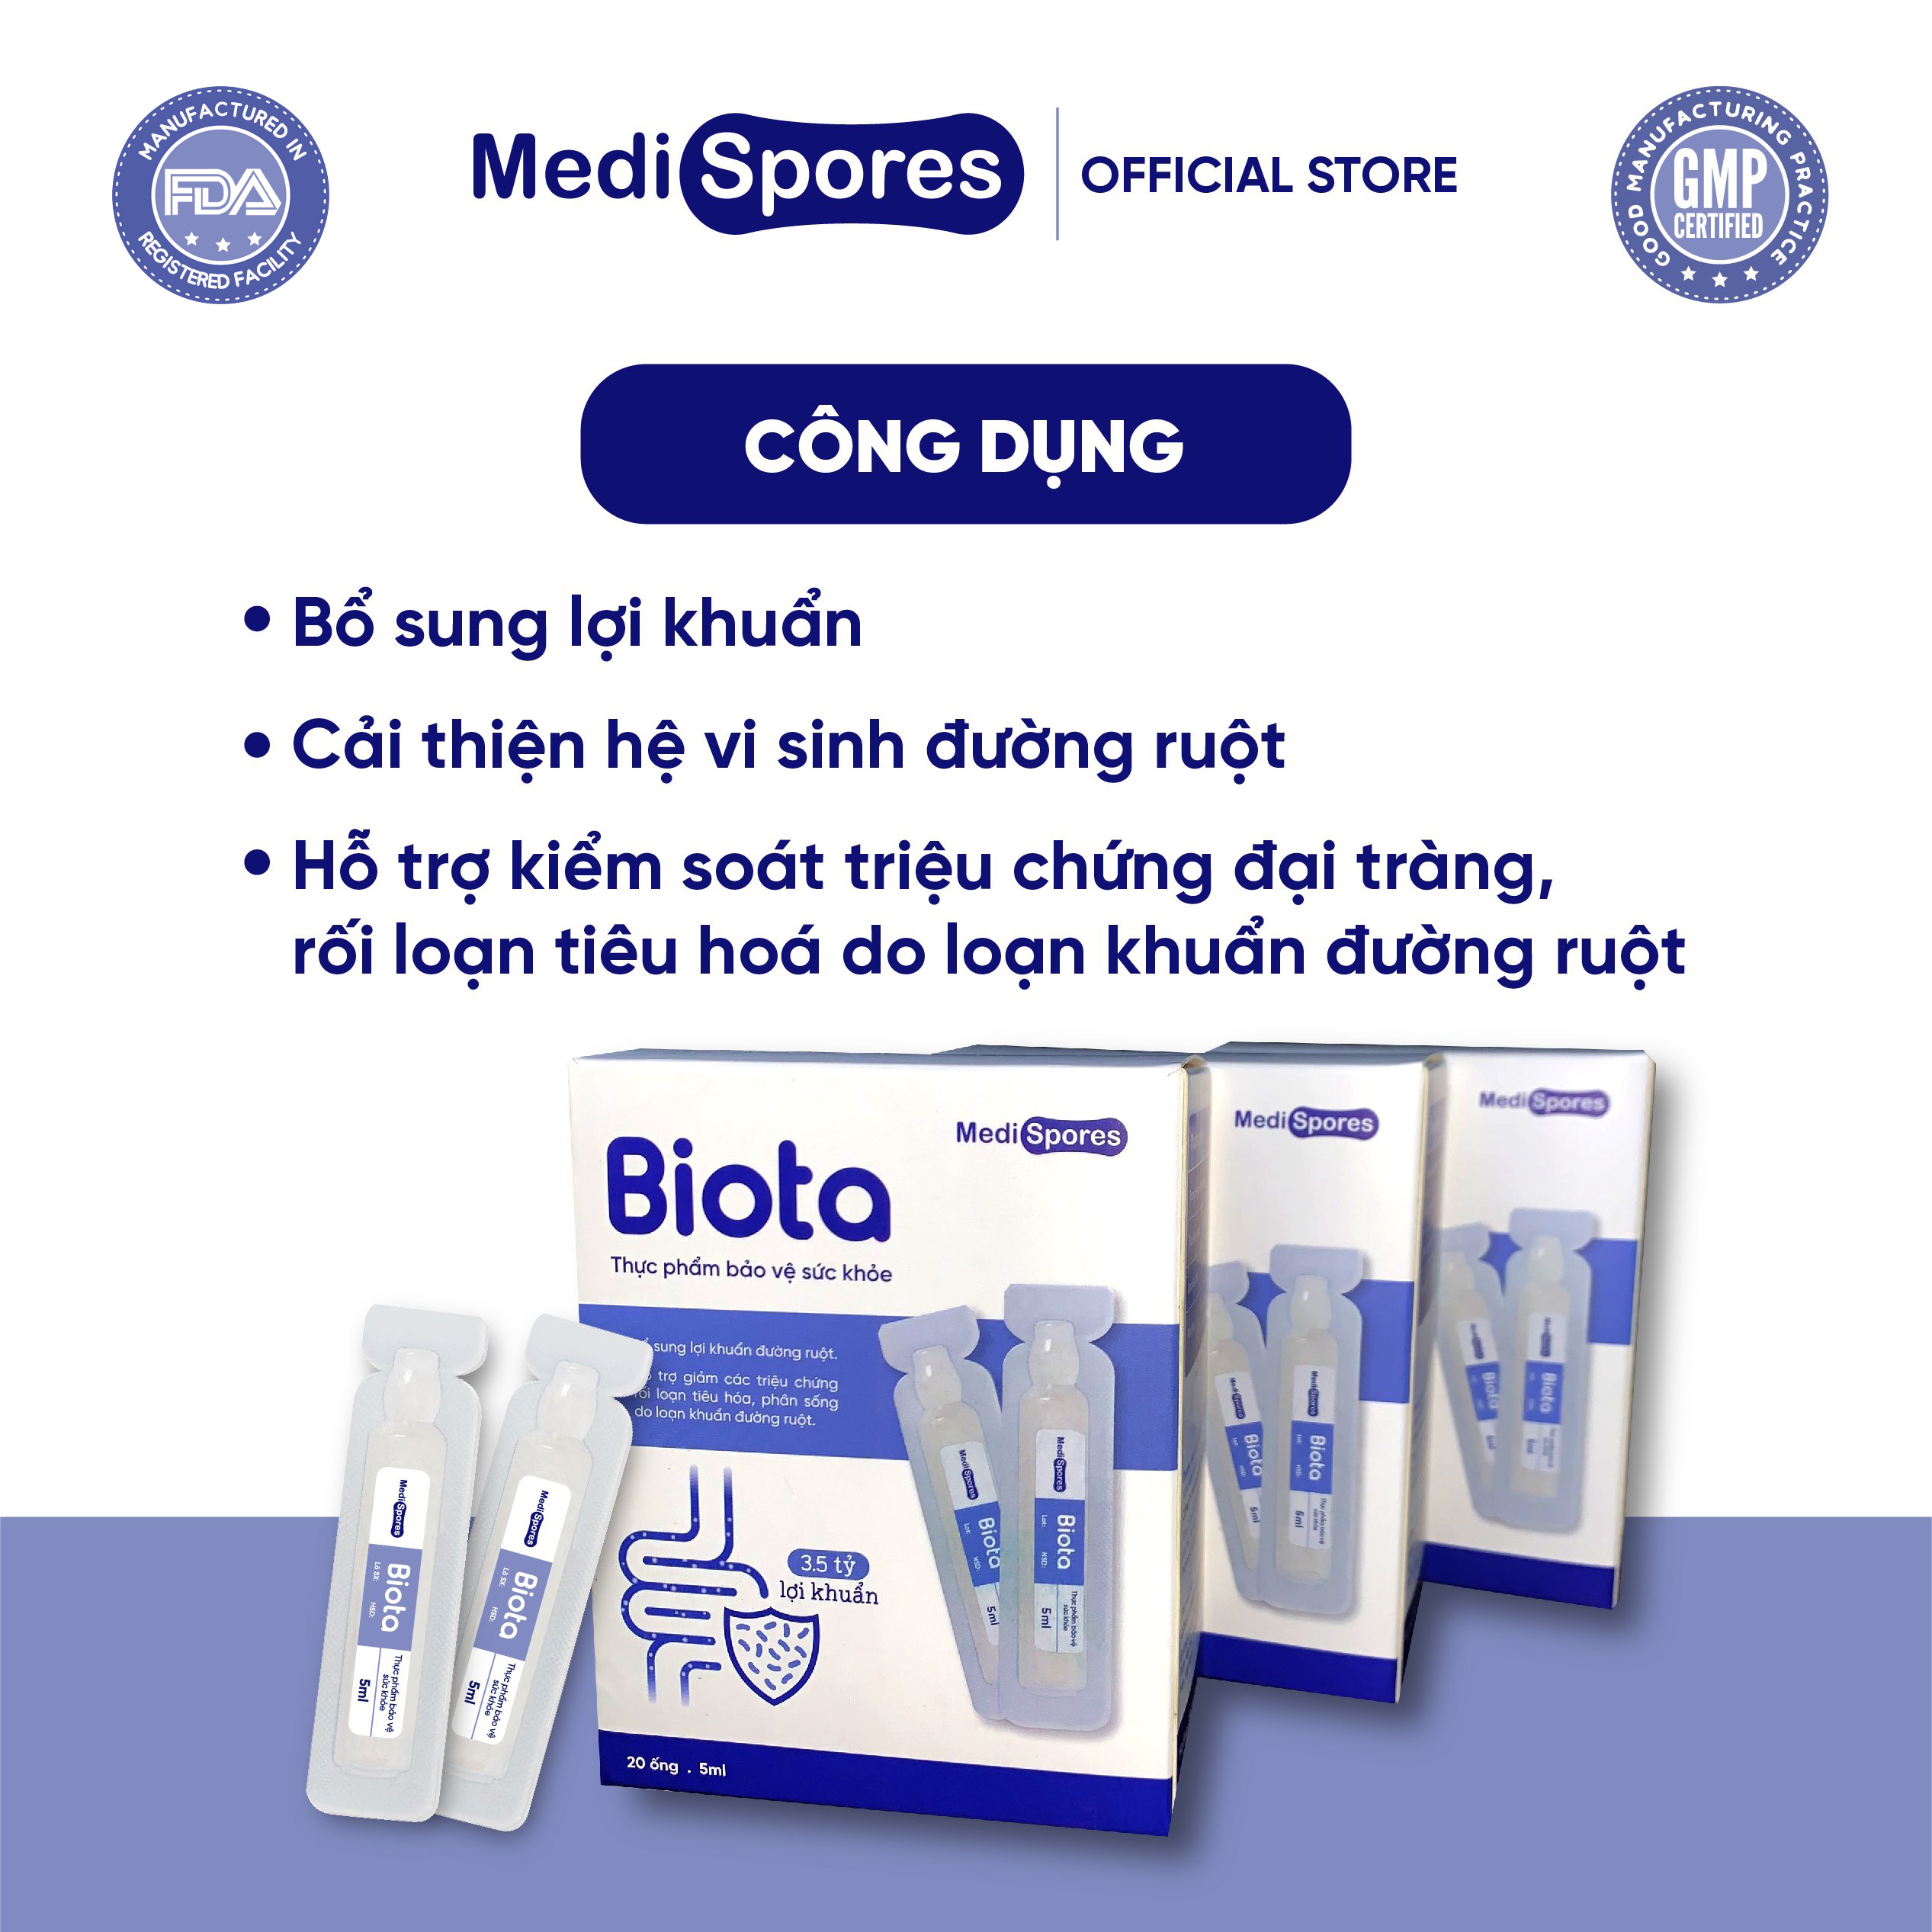 Men uống vi sinh MediSpores Biota bổ sung lợi khuẩn, giảm triệu chứng rối loạn tiêu hóa do sử dụng kháng sinh dài ngày, hỗ trợ hấp thu 3